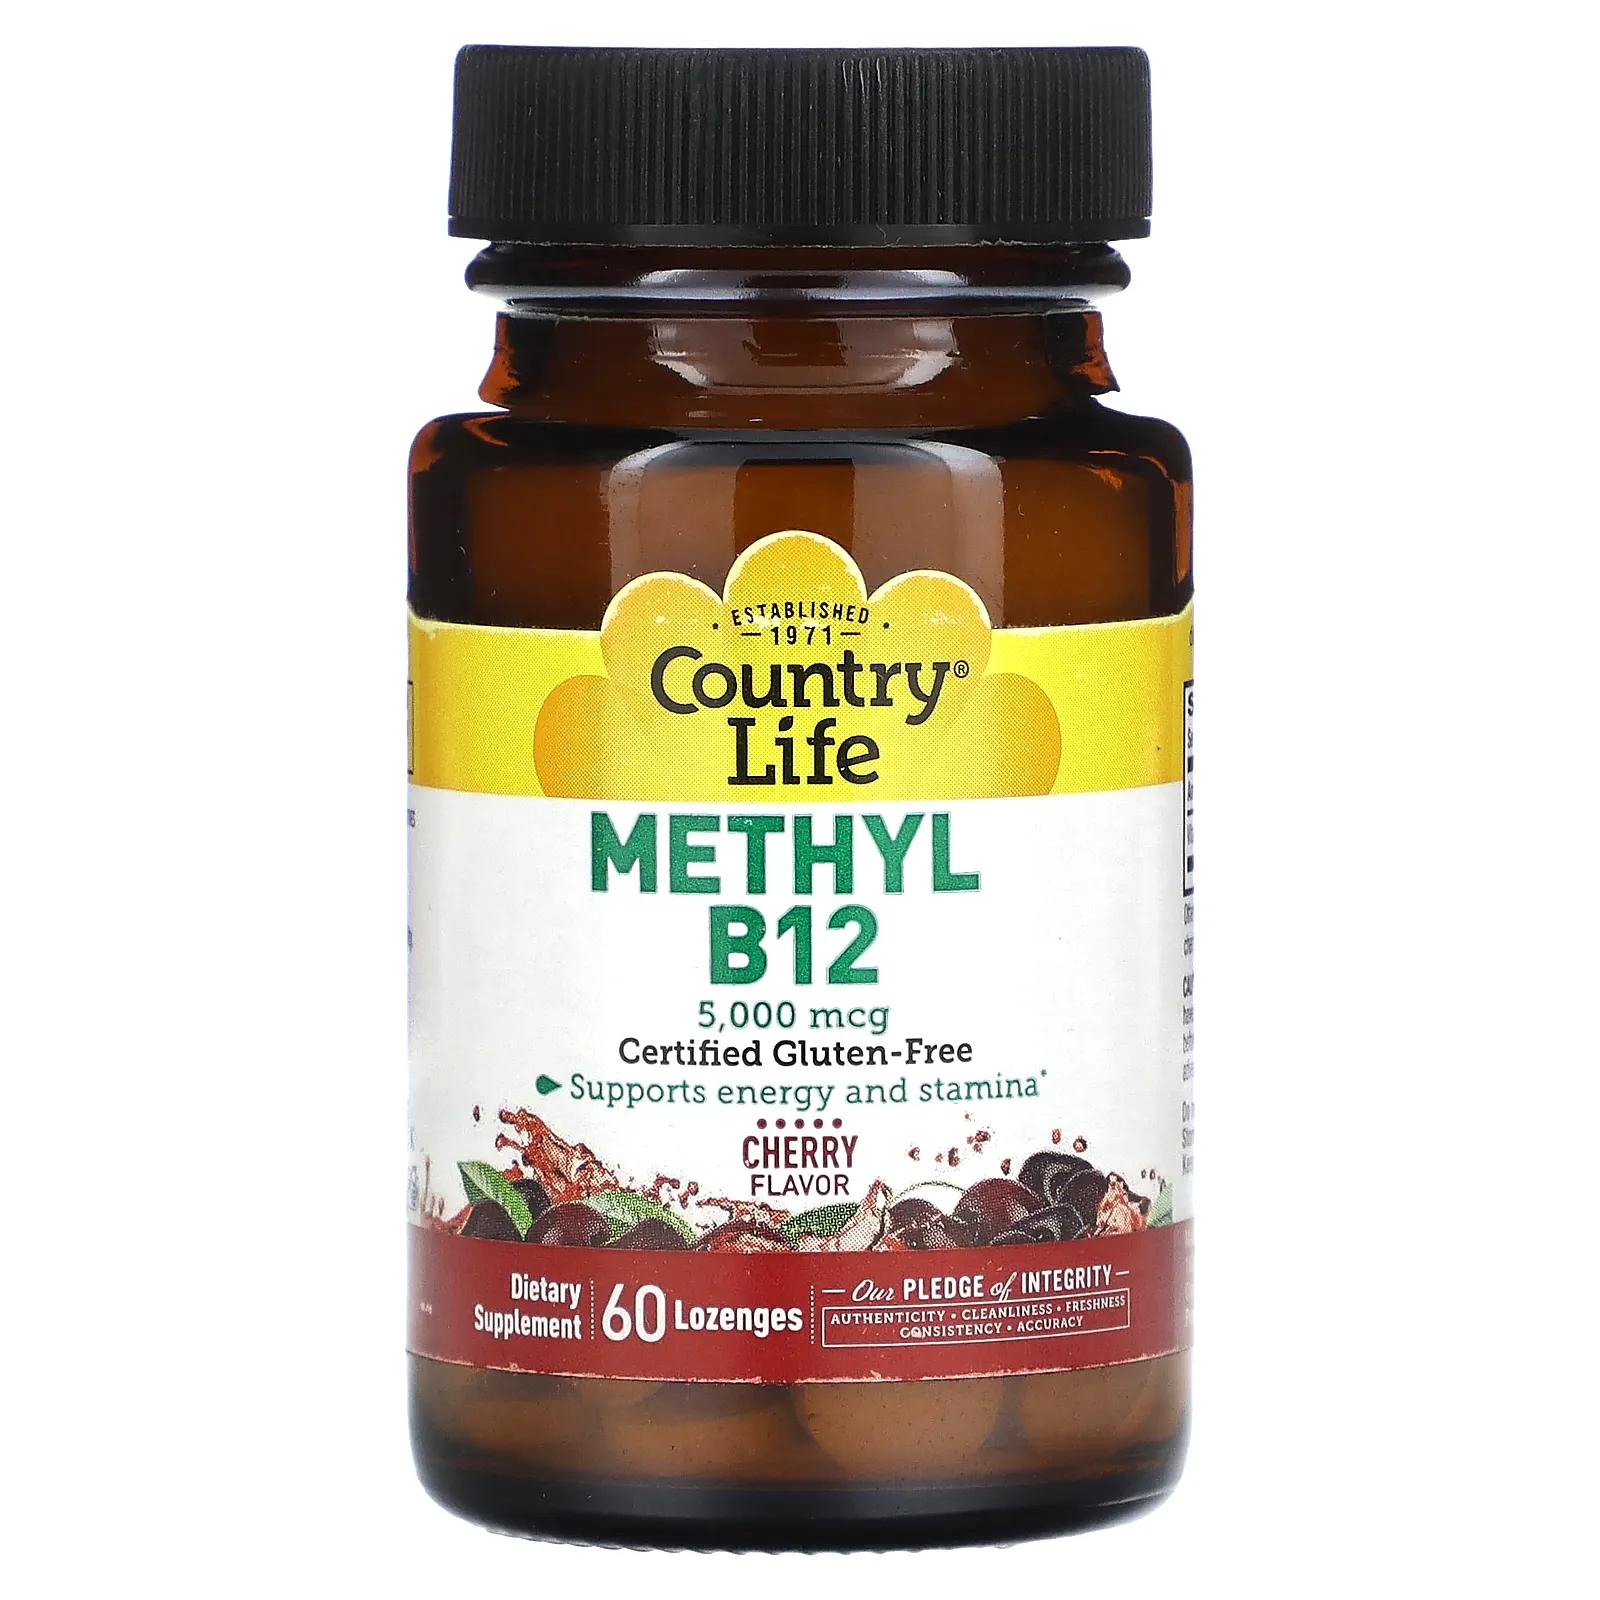 Country Life Метил B12 со вкусом вишни 5000 мкг 60 леденцов jarrow formulas метил b12 и метилфолат со вкусом вишни 5000 мкг 800 мкг 60 жевательных таблеток